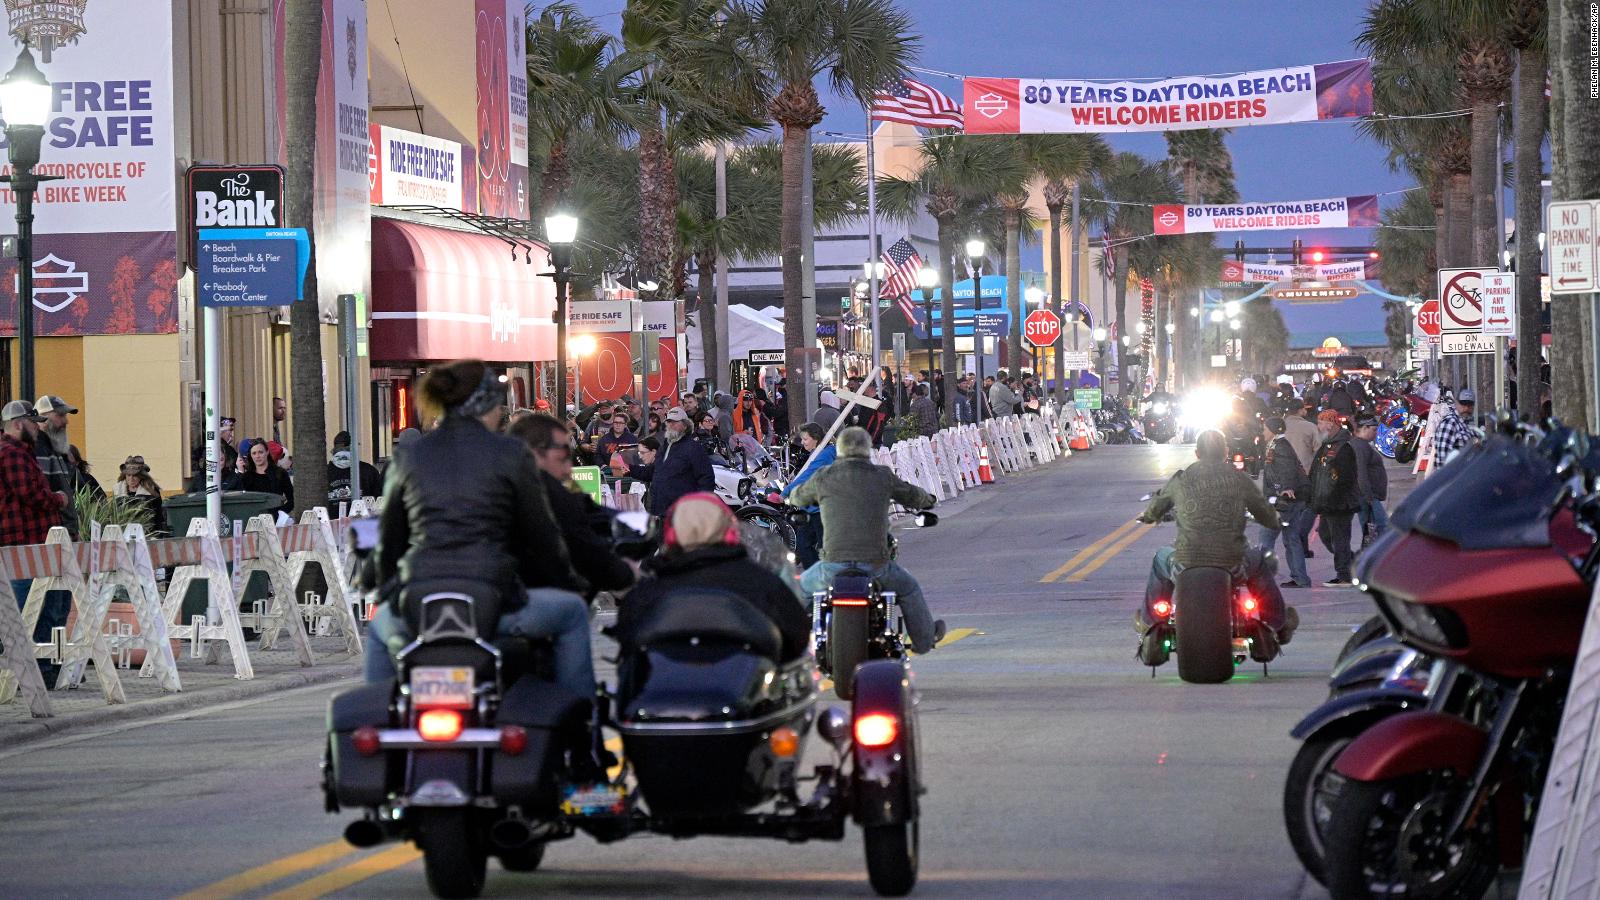 Daytona Beach Bike Week Around 300,000 people are expected despite the